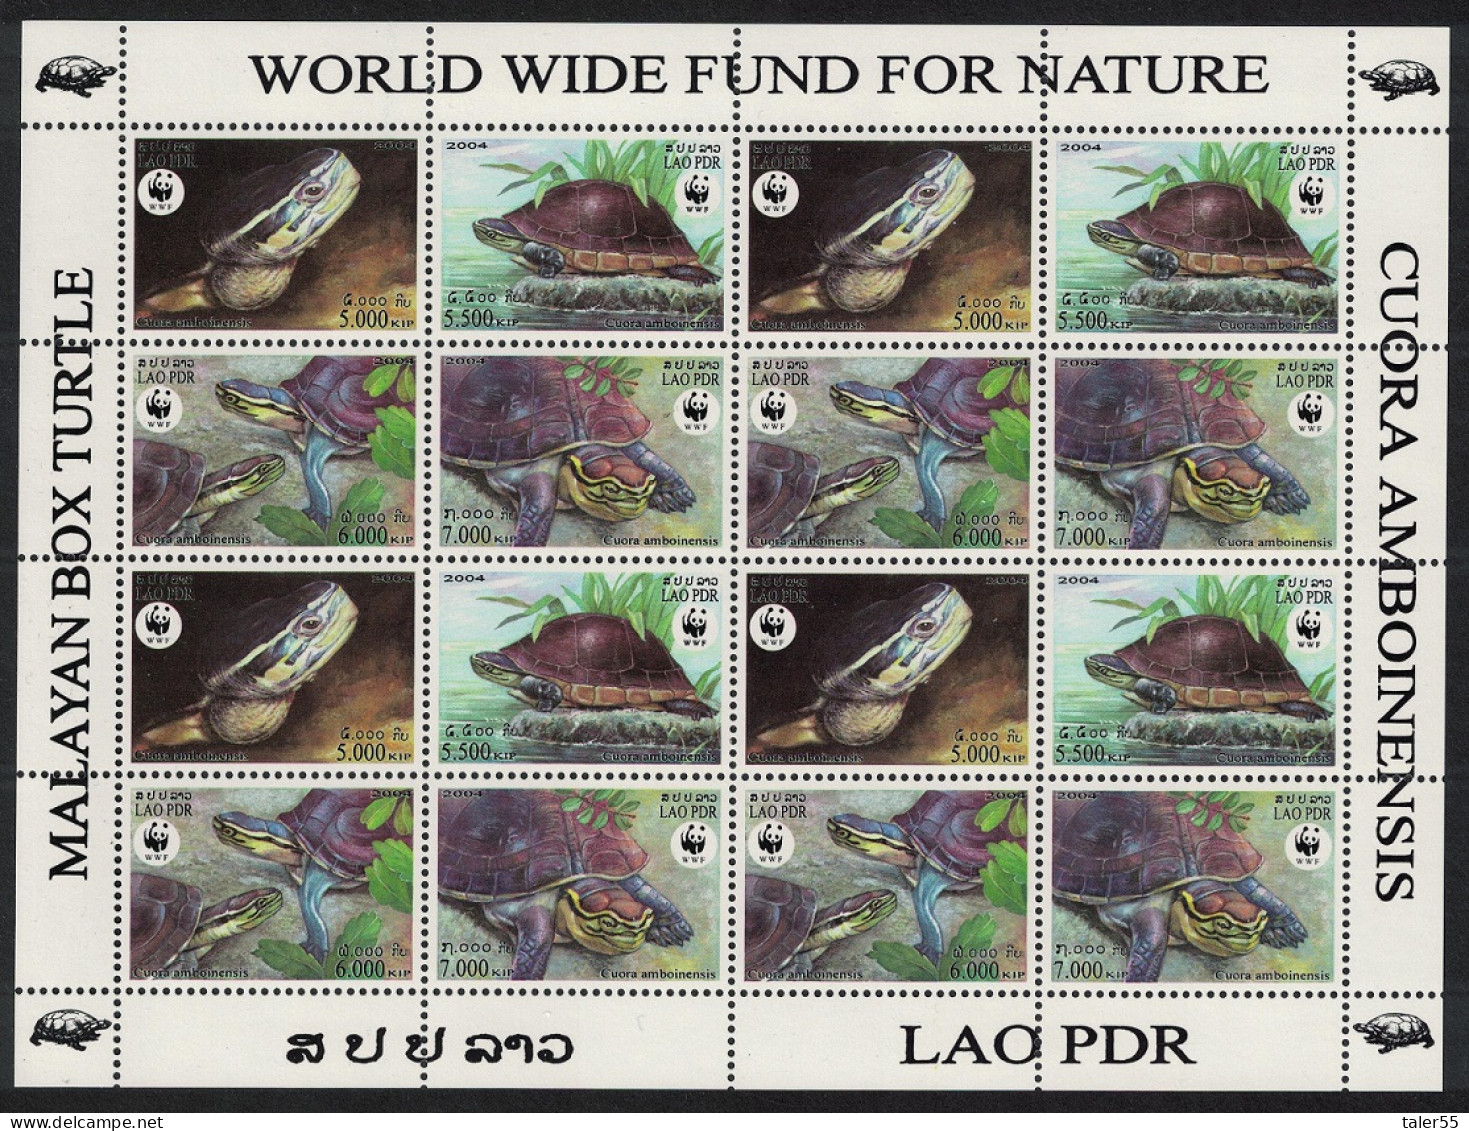 Laos WWF Malayan Box Turtle Sheetlet Of 4 Sets 2004 MNH SG#1892-1895 MI#1927-1930 Sc#1625 A-d - Laos